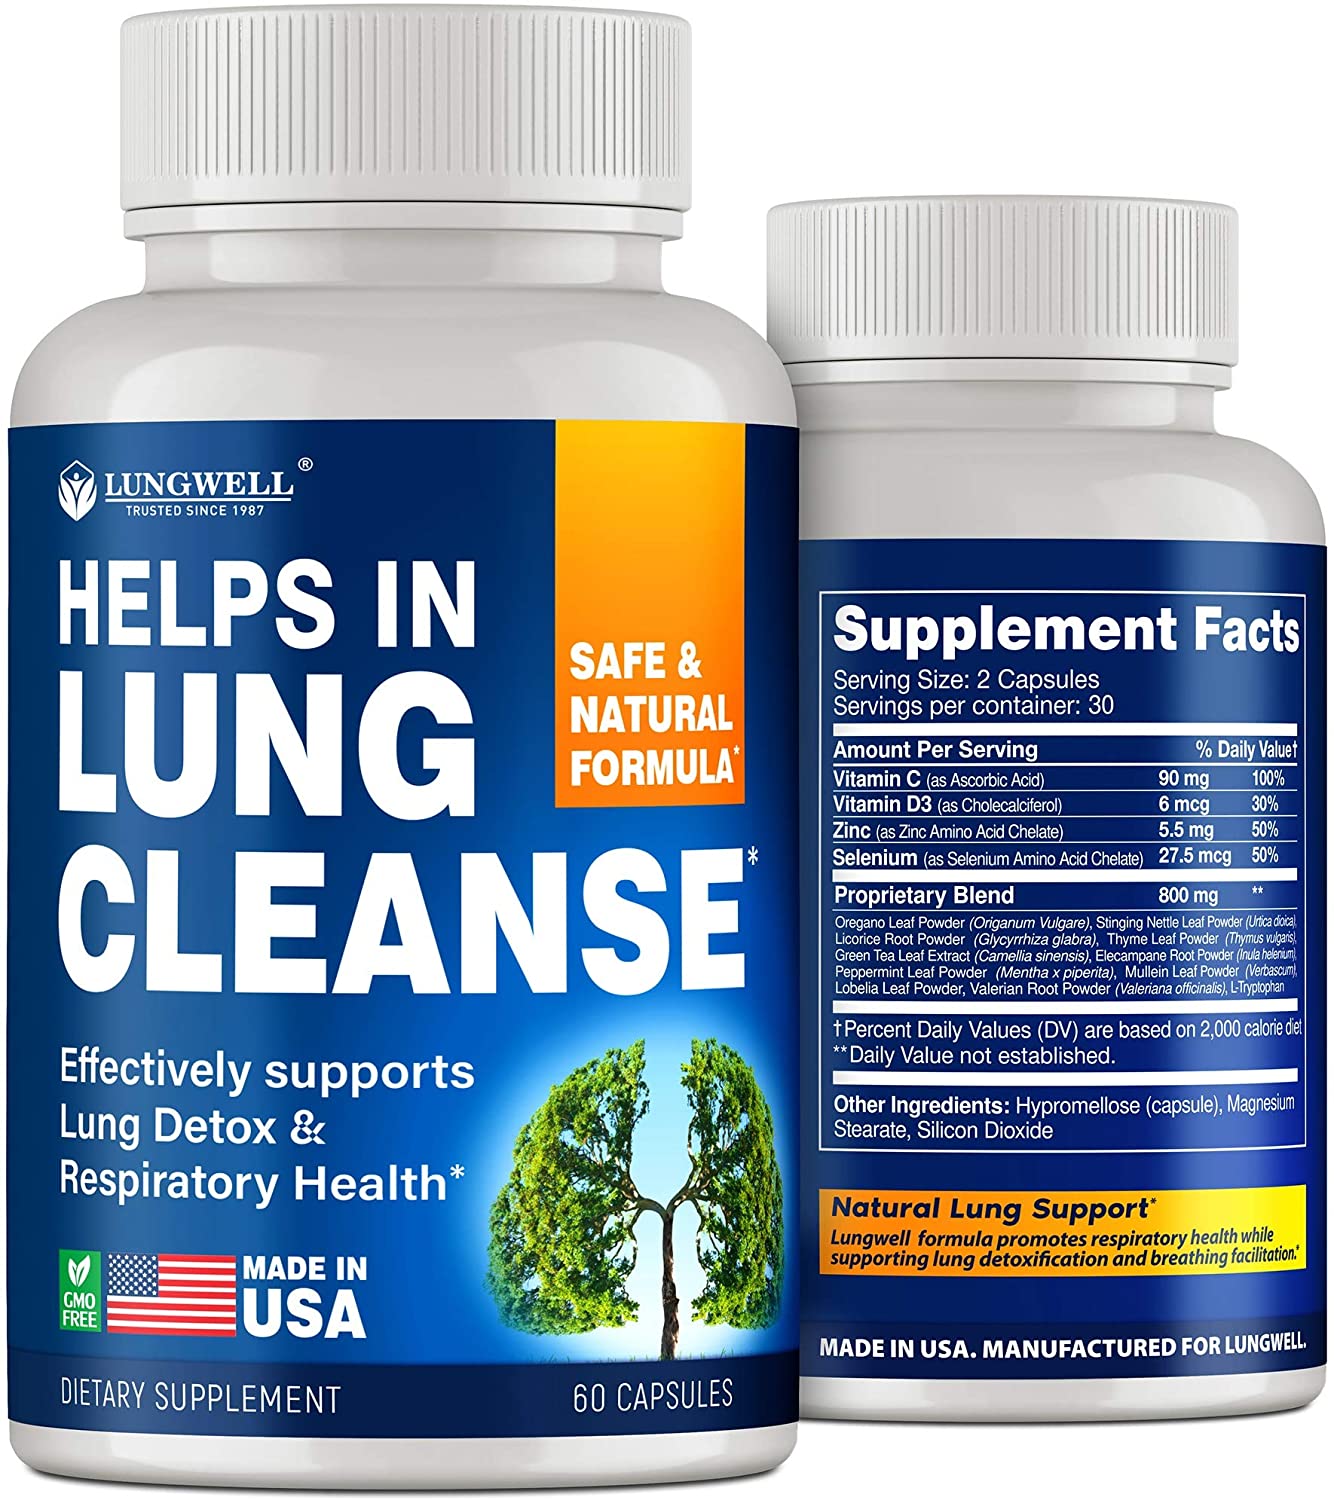 禁煙補助剤-米国製-肺の浄化と禁煙に役立つ-肺の浄化とストレス解消のためのマルチリンとL-トリプトフ